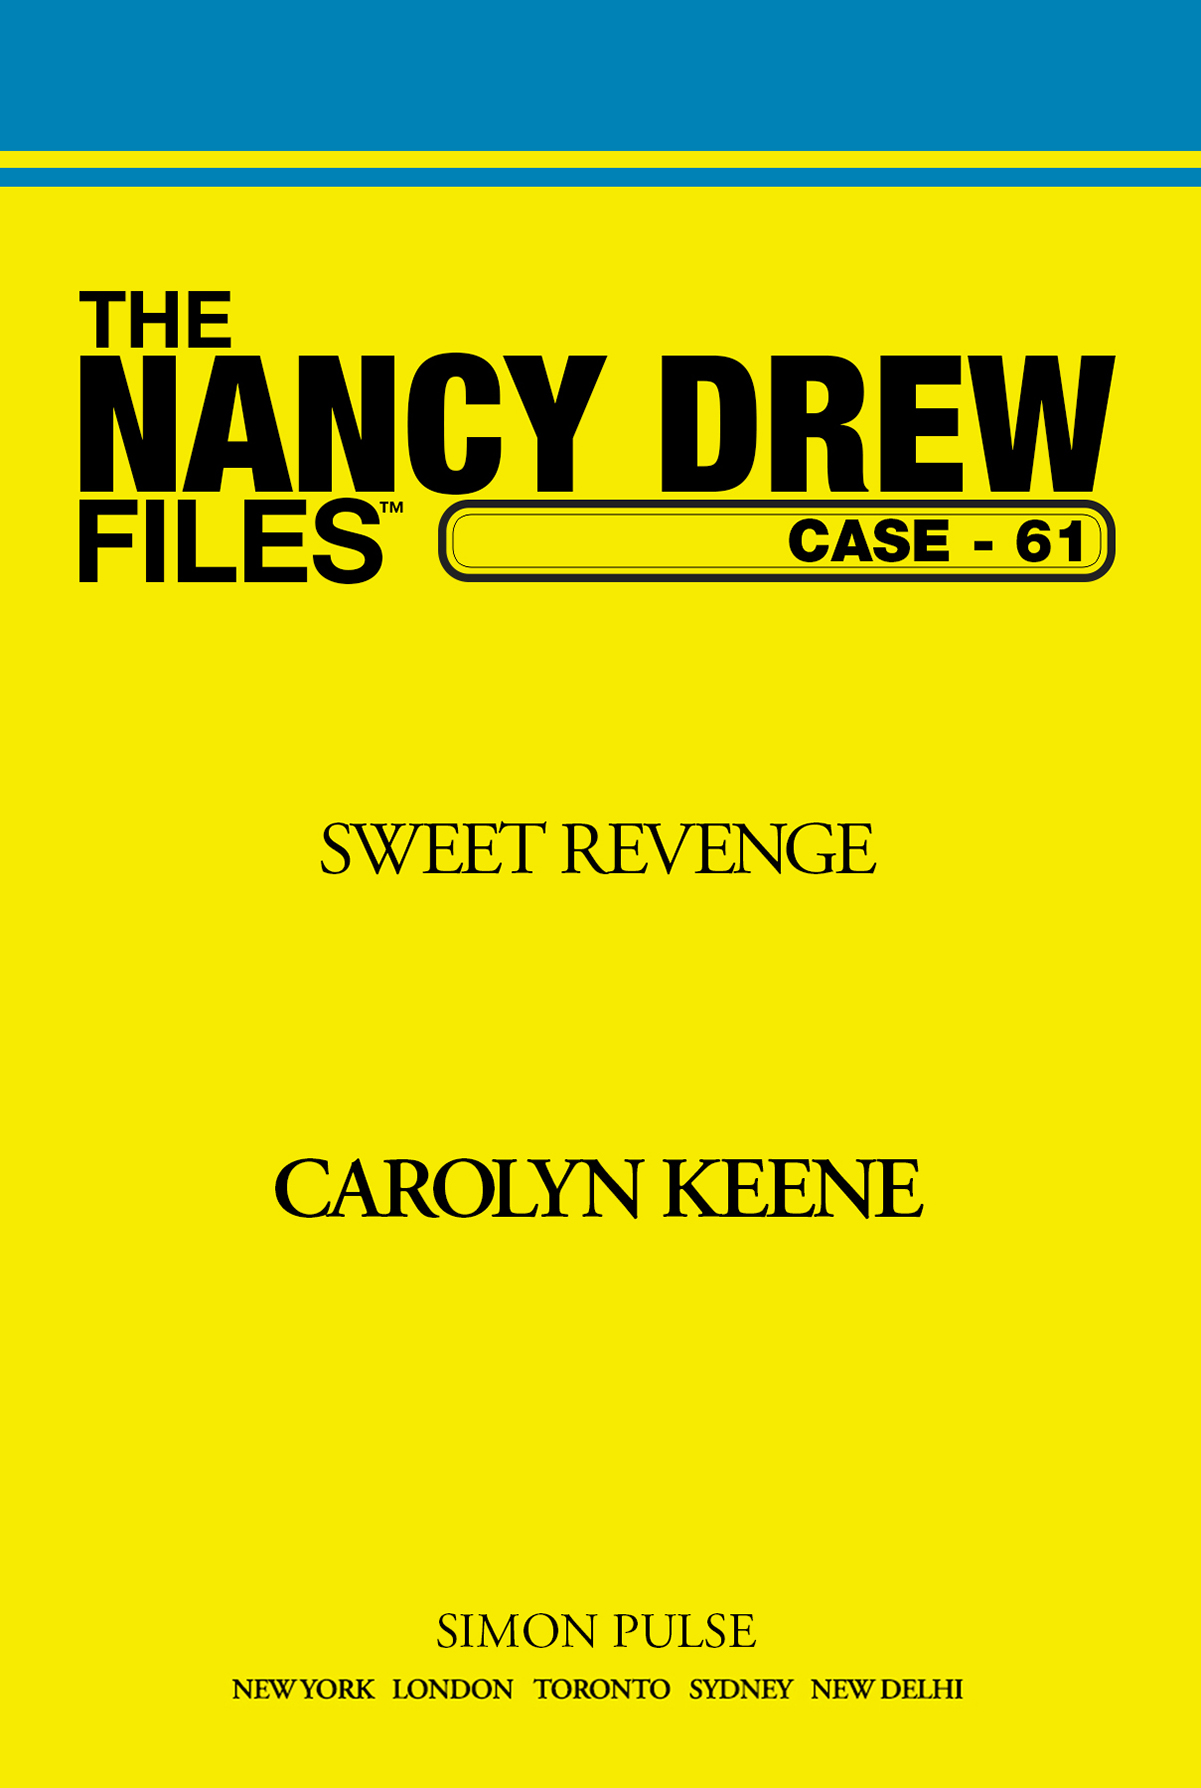 Sweet Revenge by Carolyn Keene